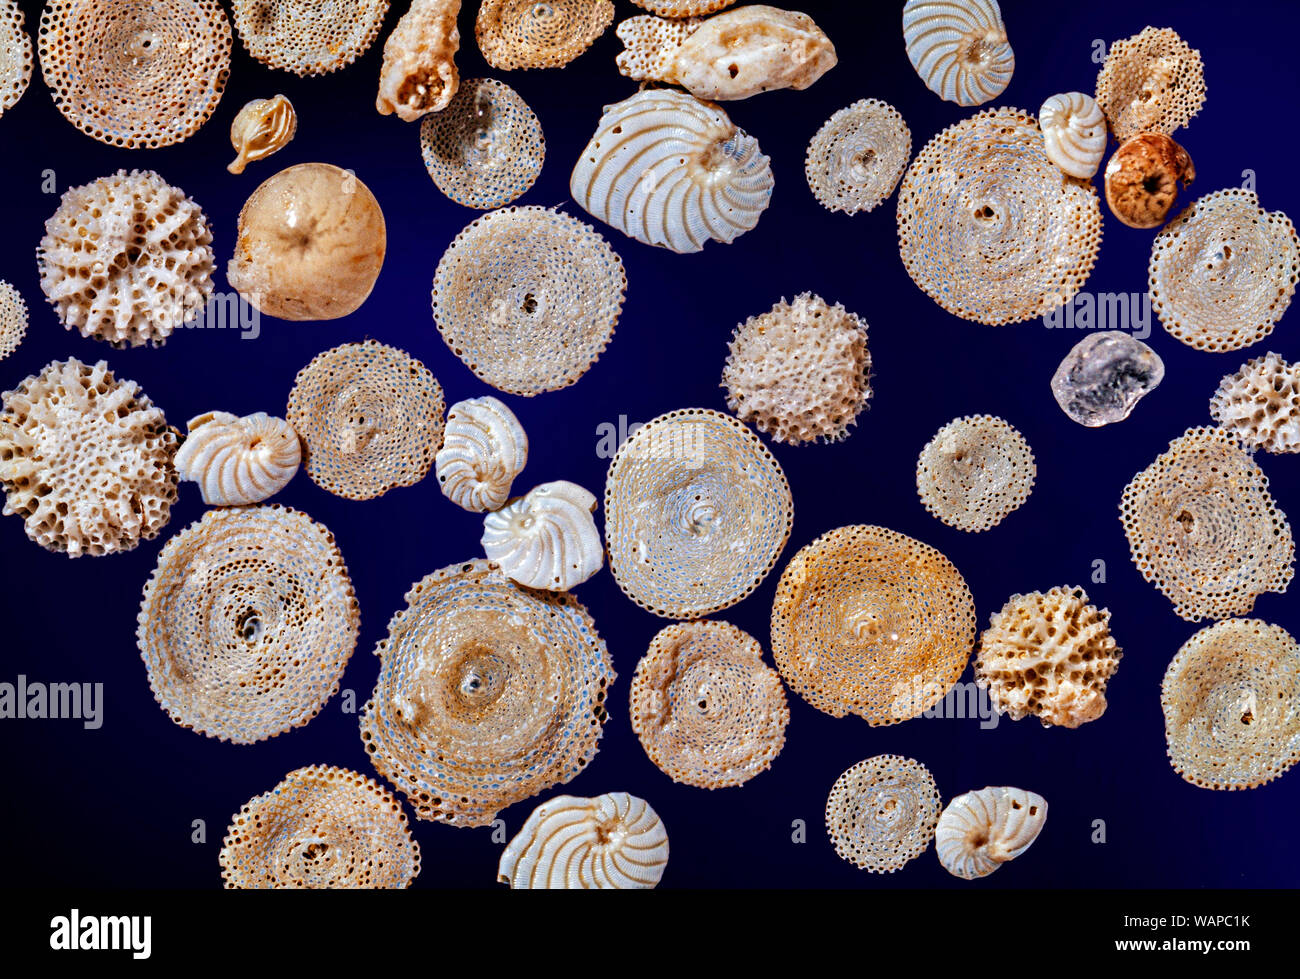 Mezclado foraminíferos marinos, conchas, restos. Mar Mediterráneo. Foto de stock